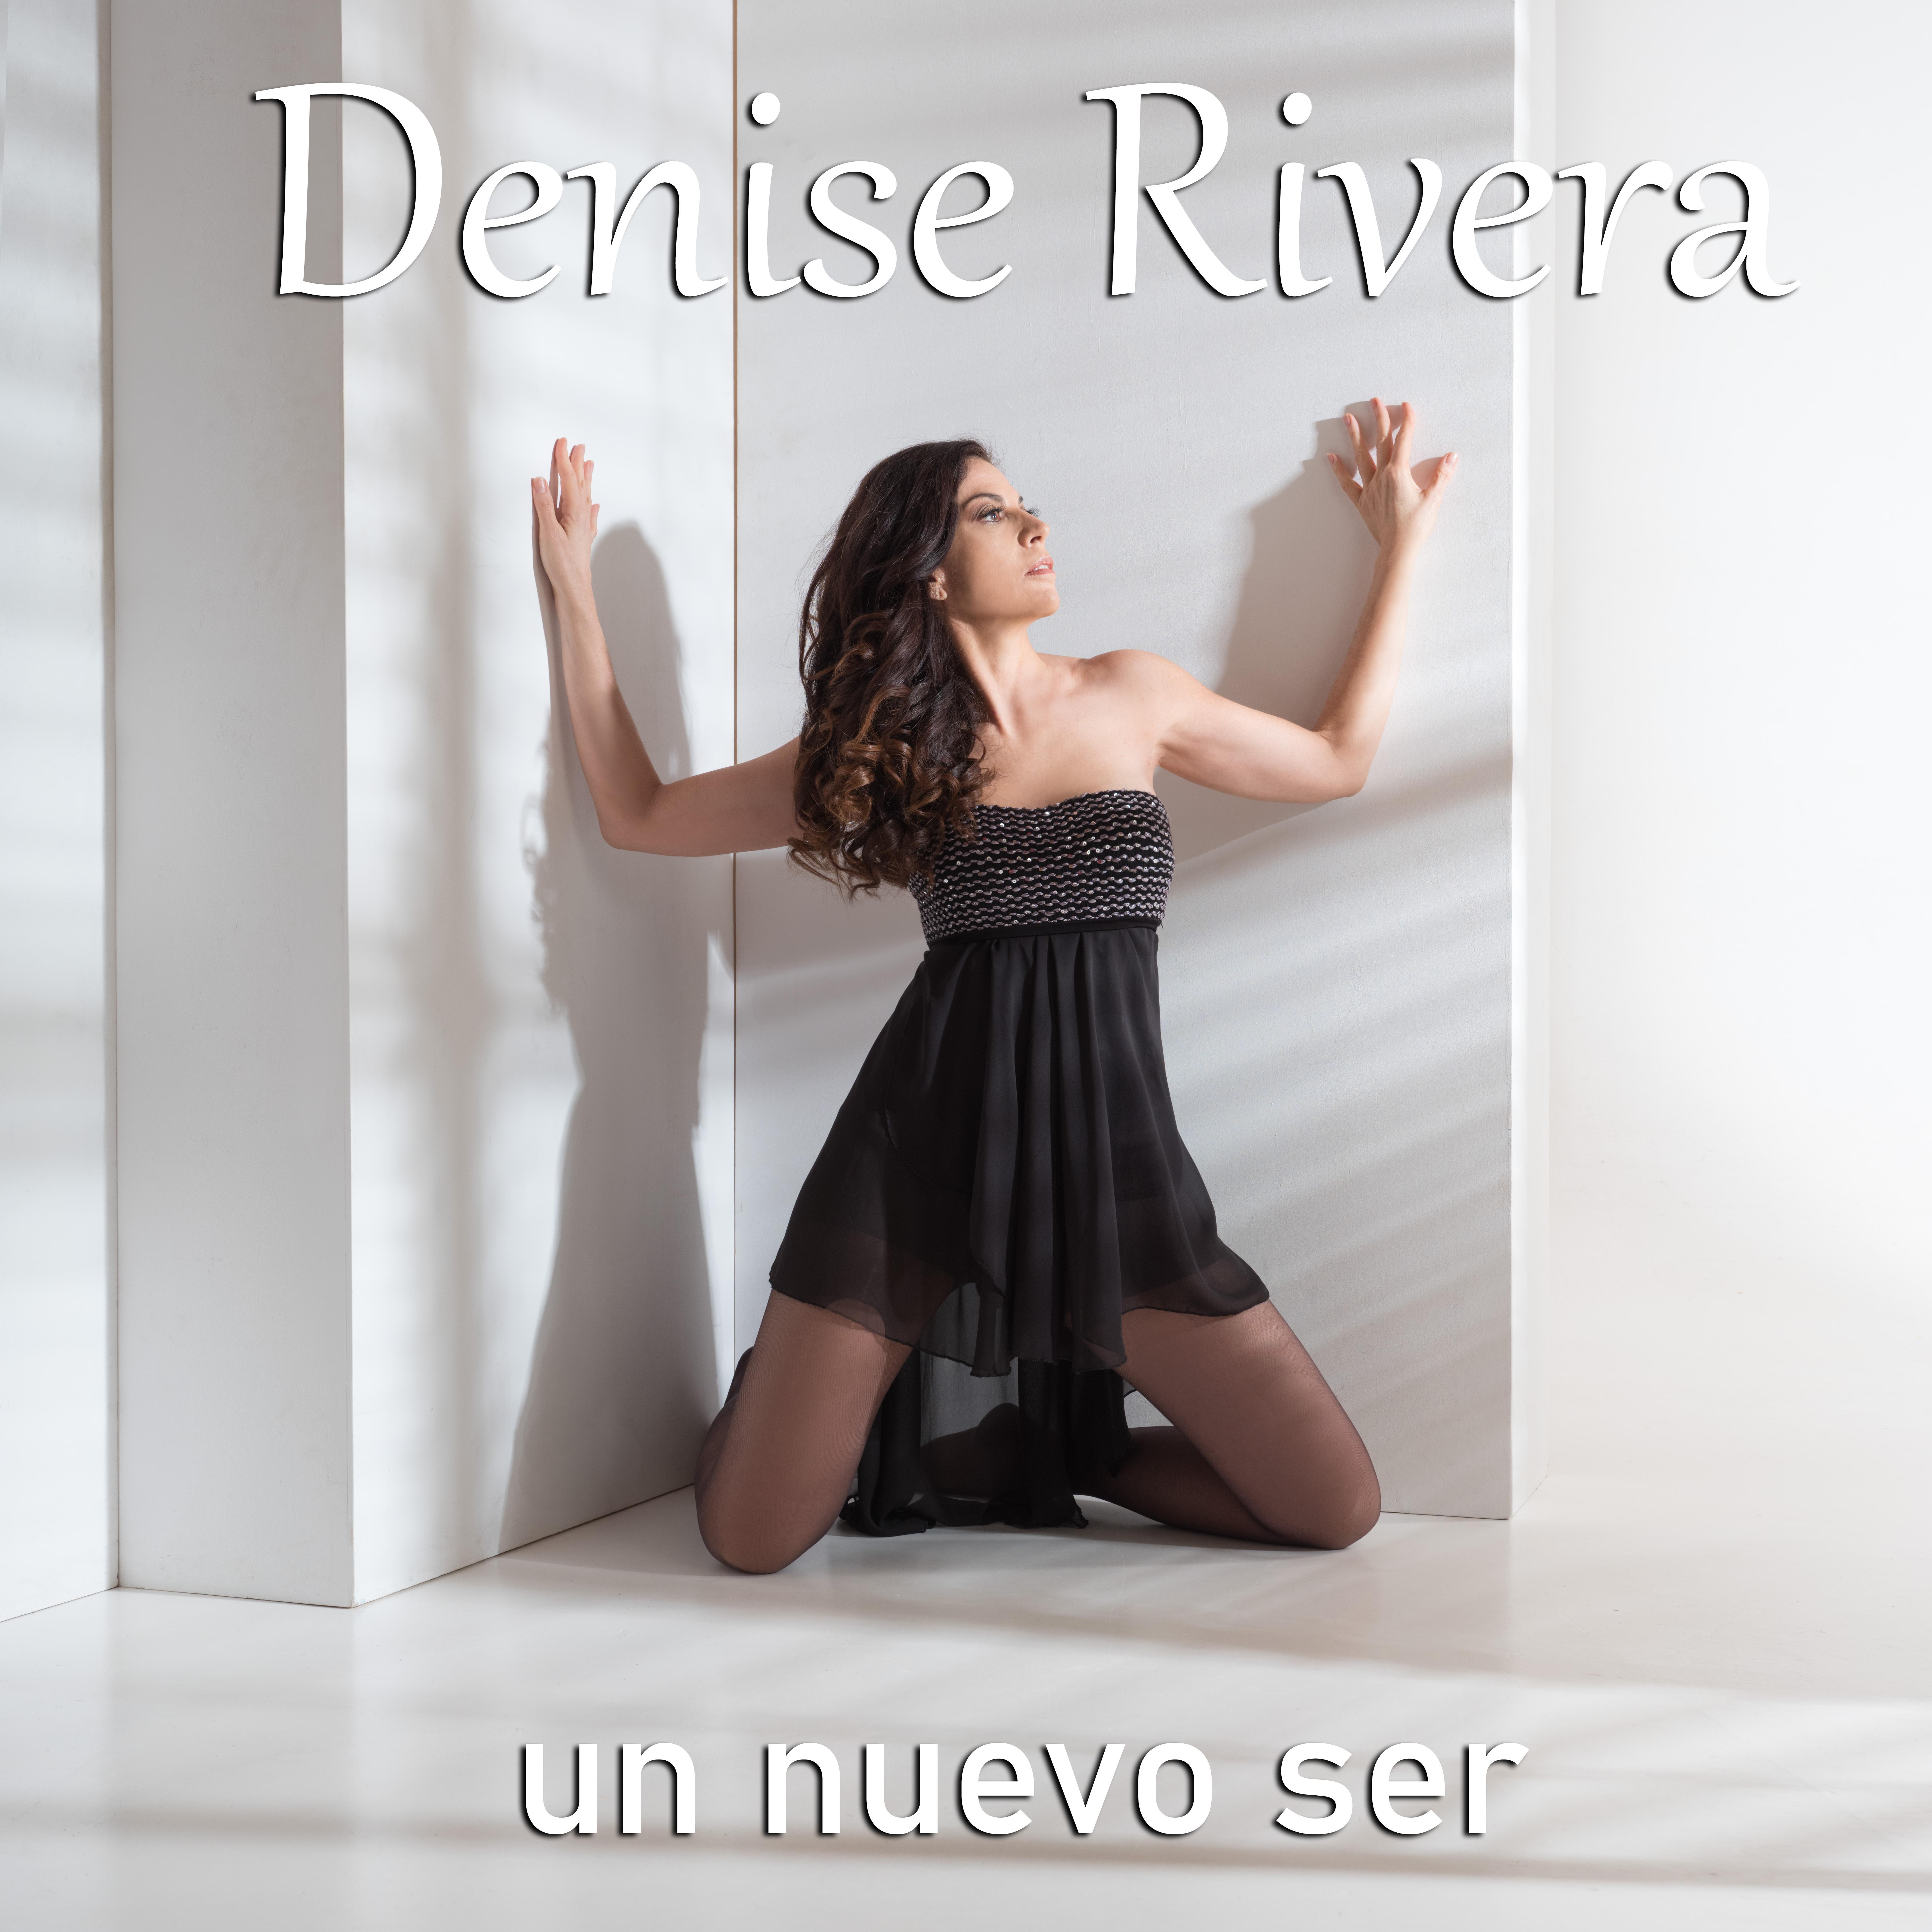 Denise Rivera - De nuevo sin ti